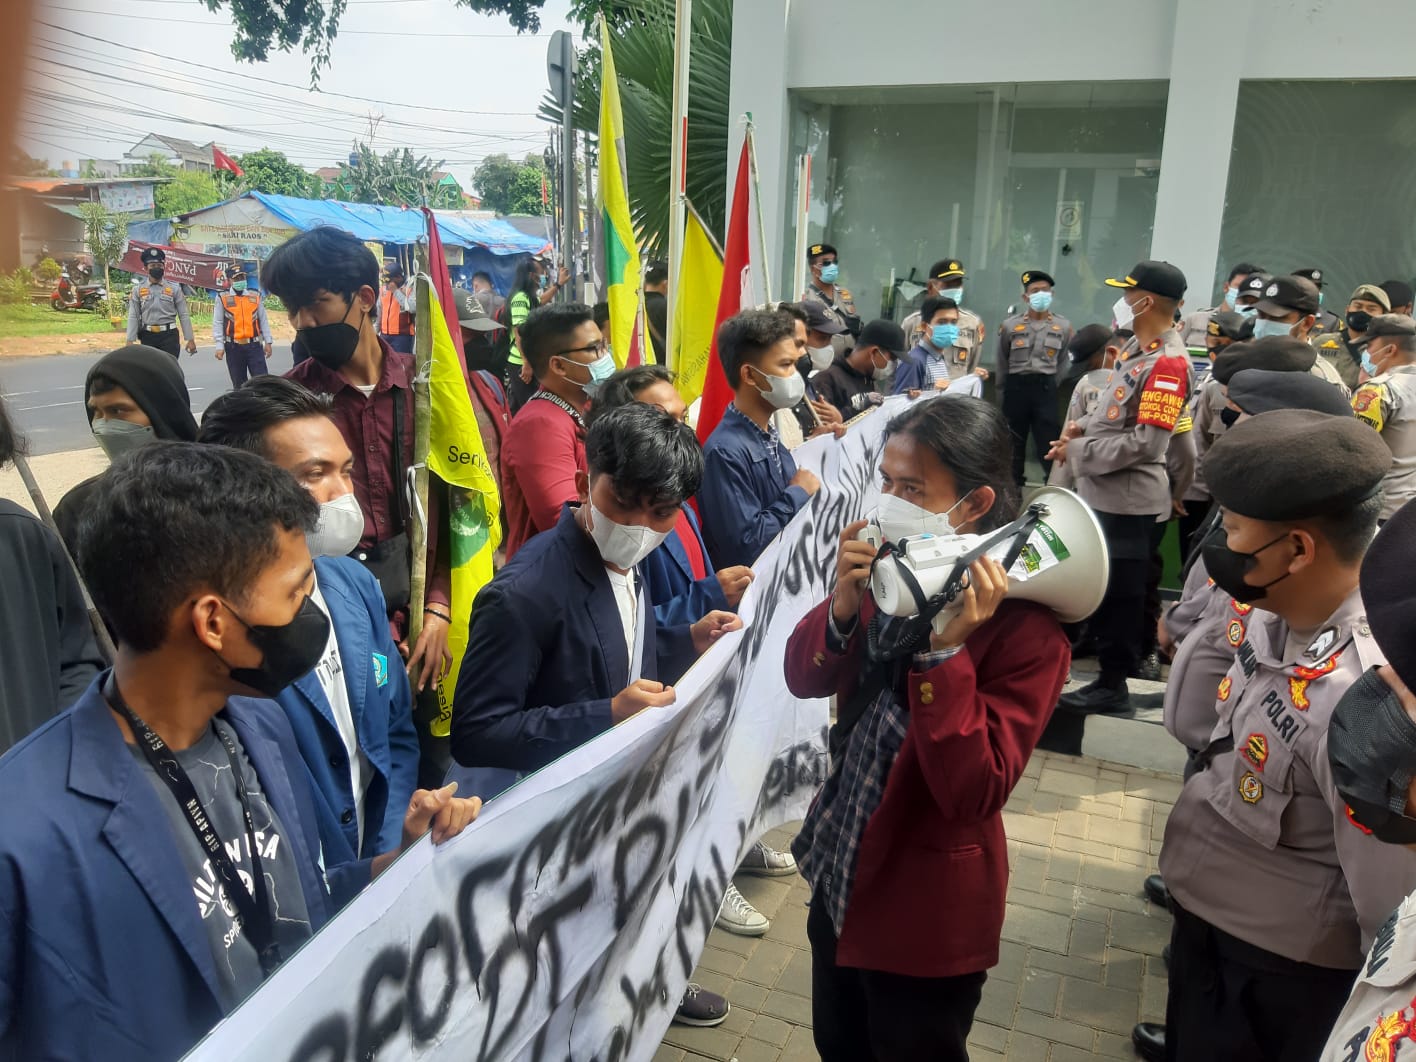 Puluhan mahasiswa dari berbagai organisasi yang tergabung dalam kelompok Cipayung Plus menyerbu Kantor Pemerintahan Kota Tangerang Selatan, Senin, 8 November 2021 siang.